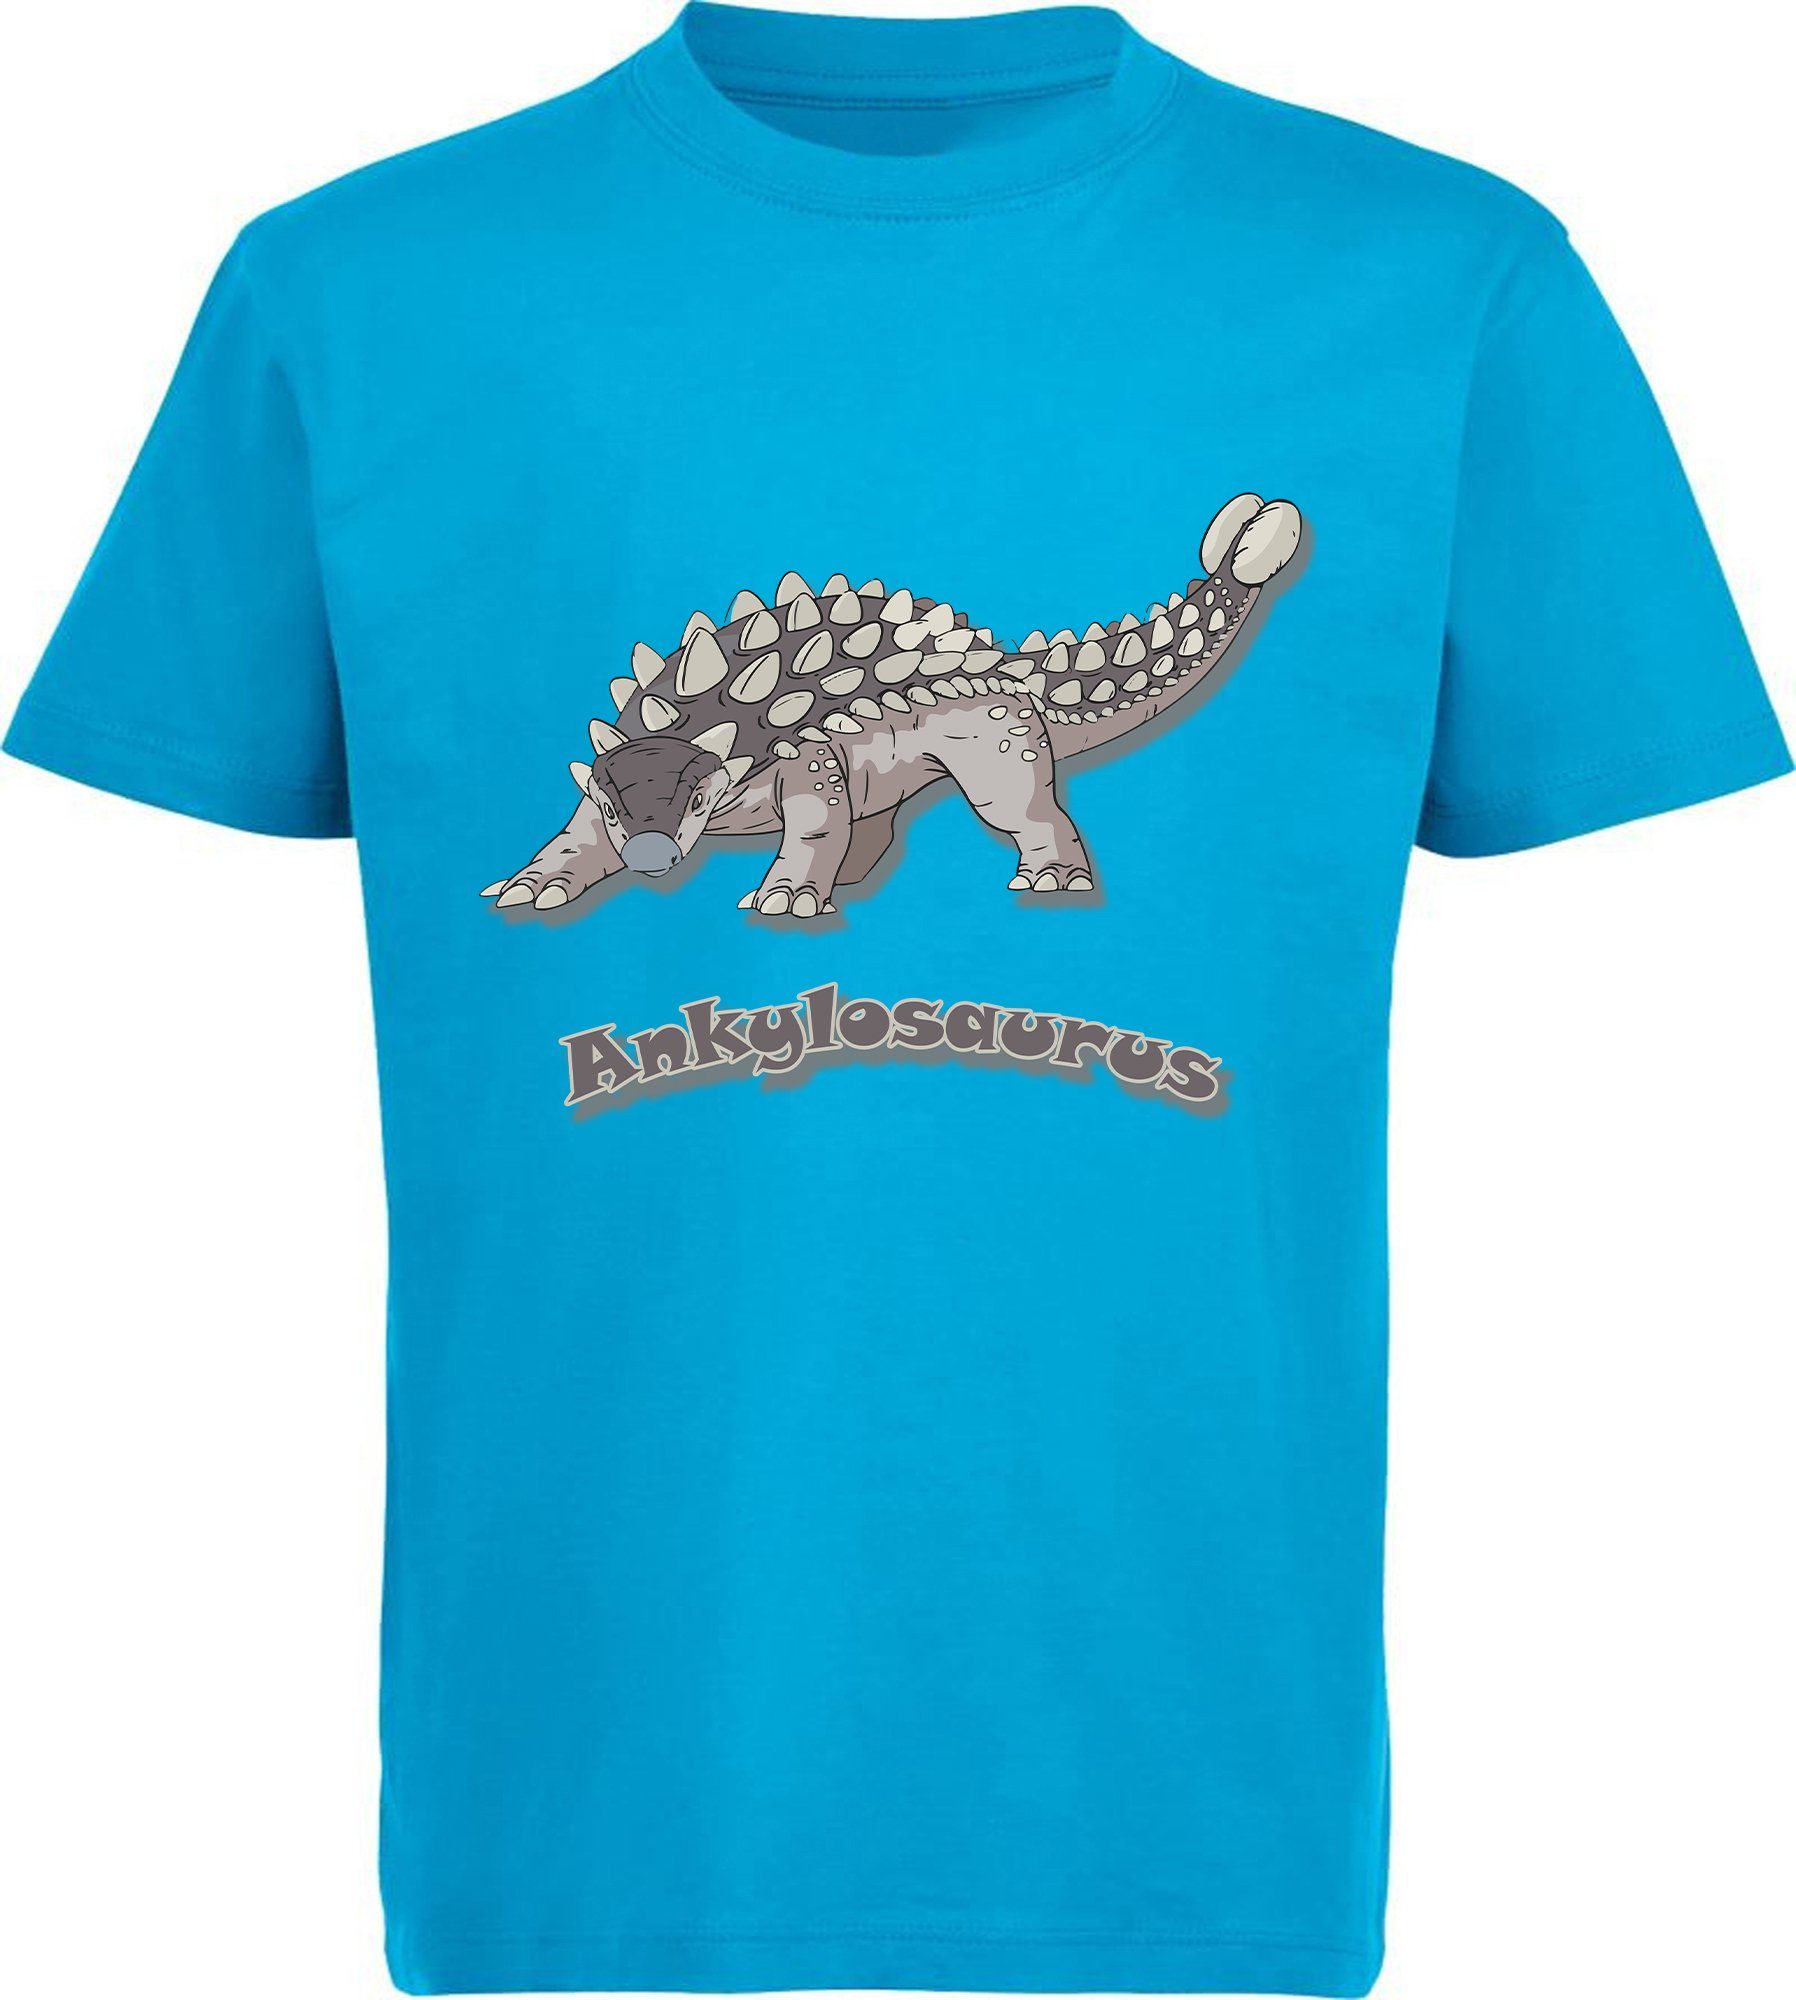 mit 100% Ankylosaurus bedrucktes T-Shirt mit weiß, Print-Shirt blau blau, aqua i63 schwarz, Dino rot, Aufdruck, MyDesign24 Baumwolle Kinder